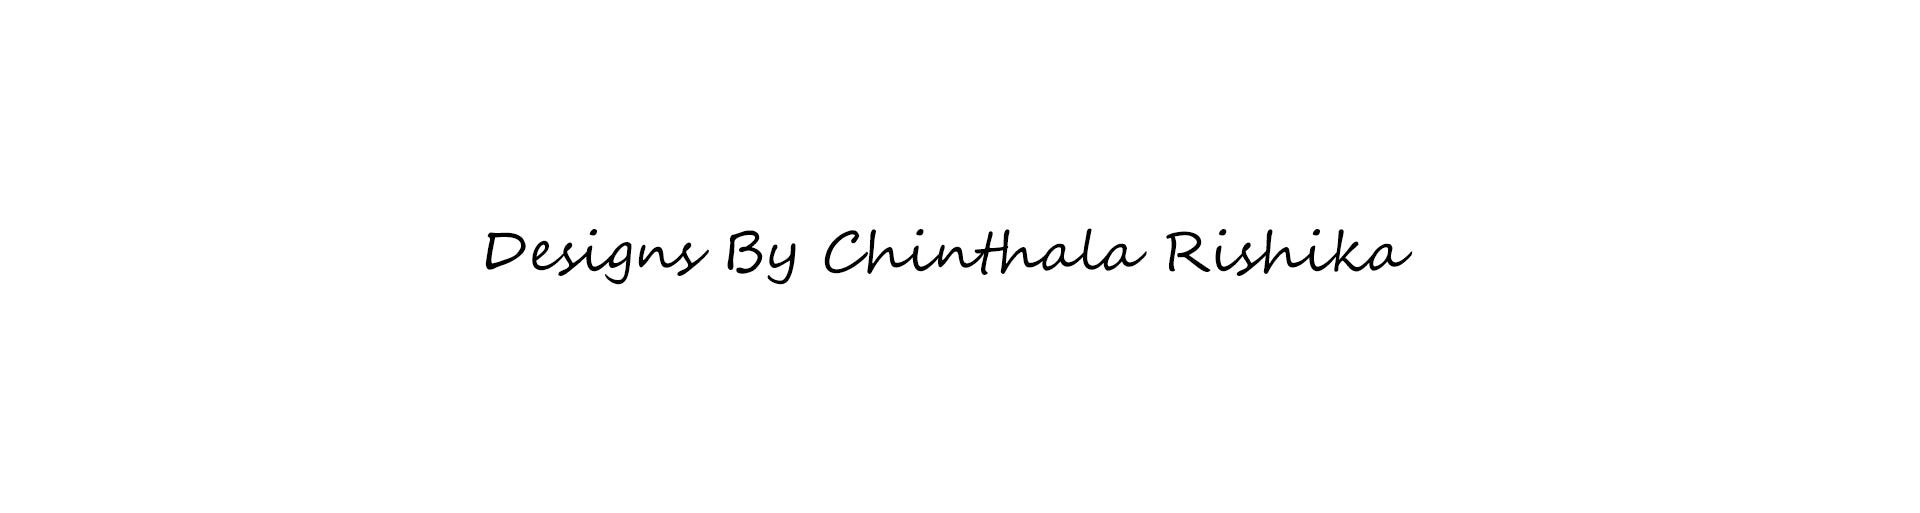 Chinthala Rishika